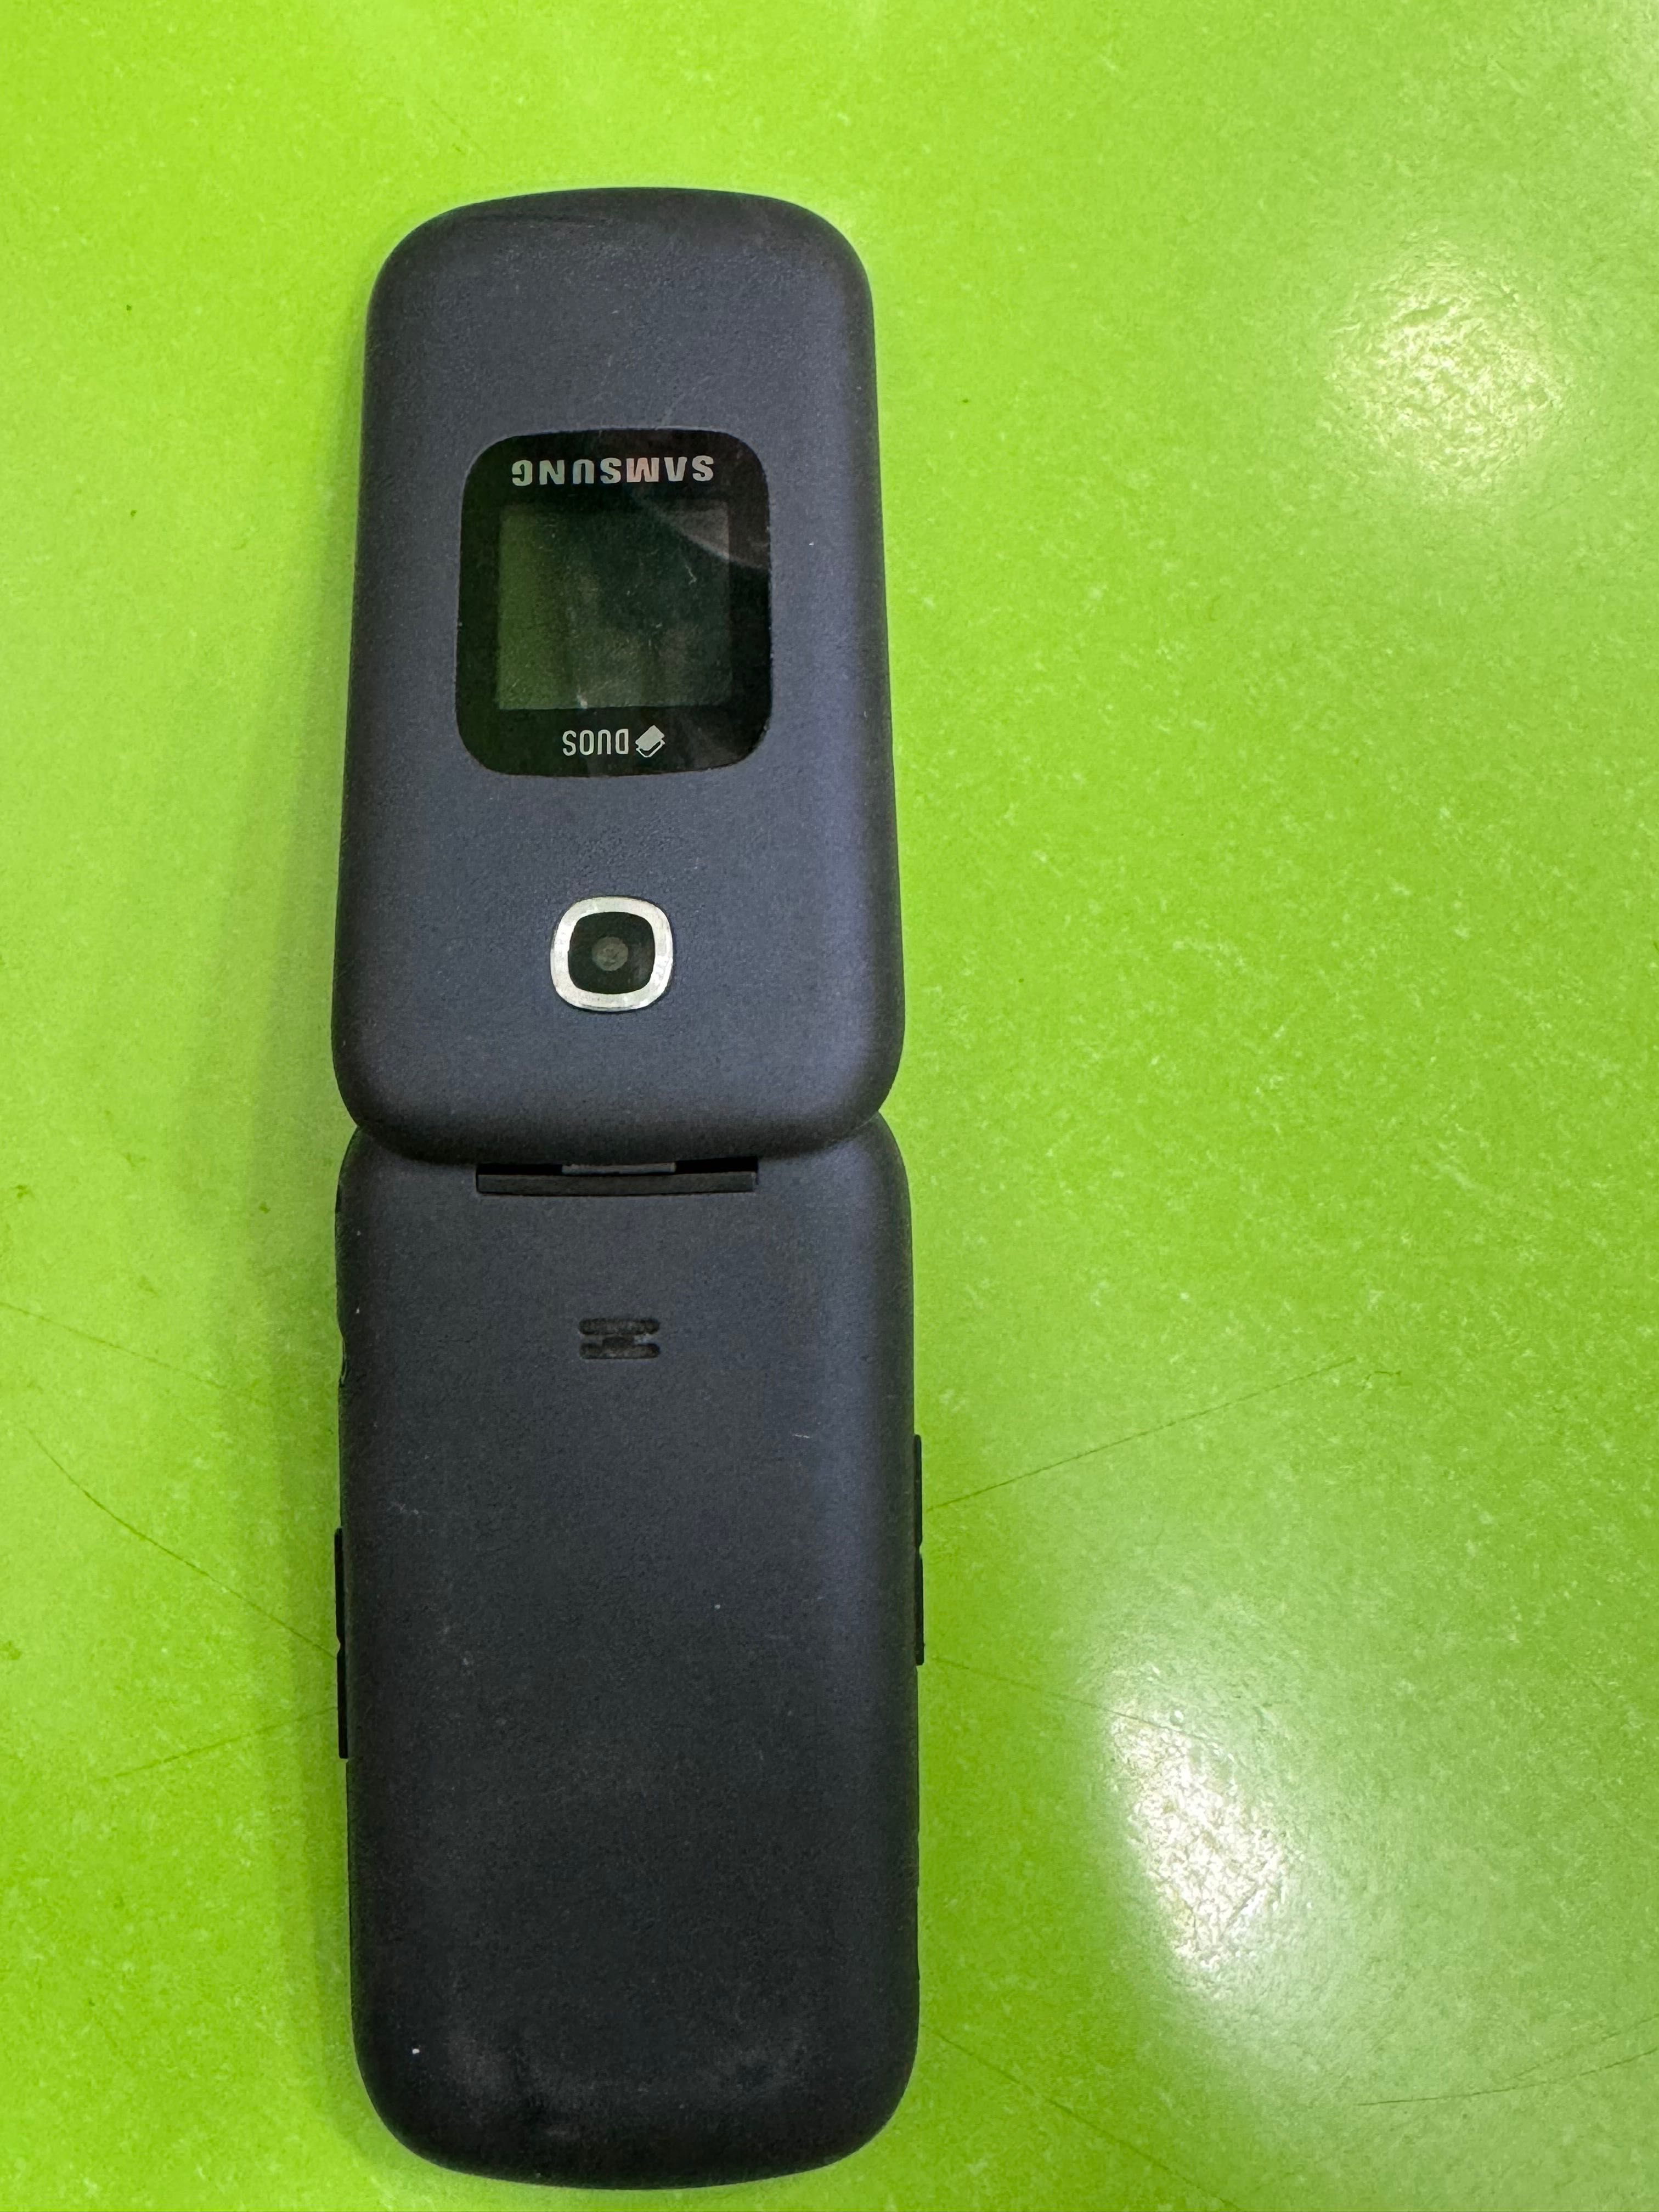 Samsung model:SM-B311V